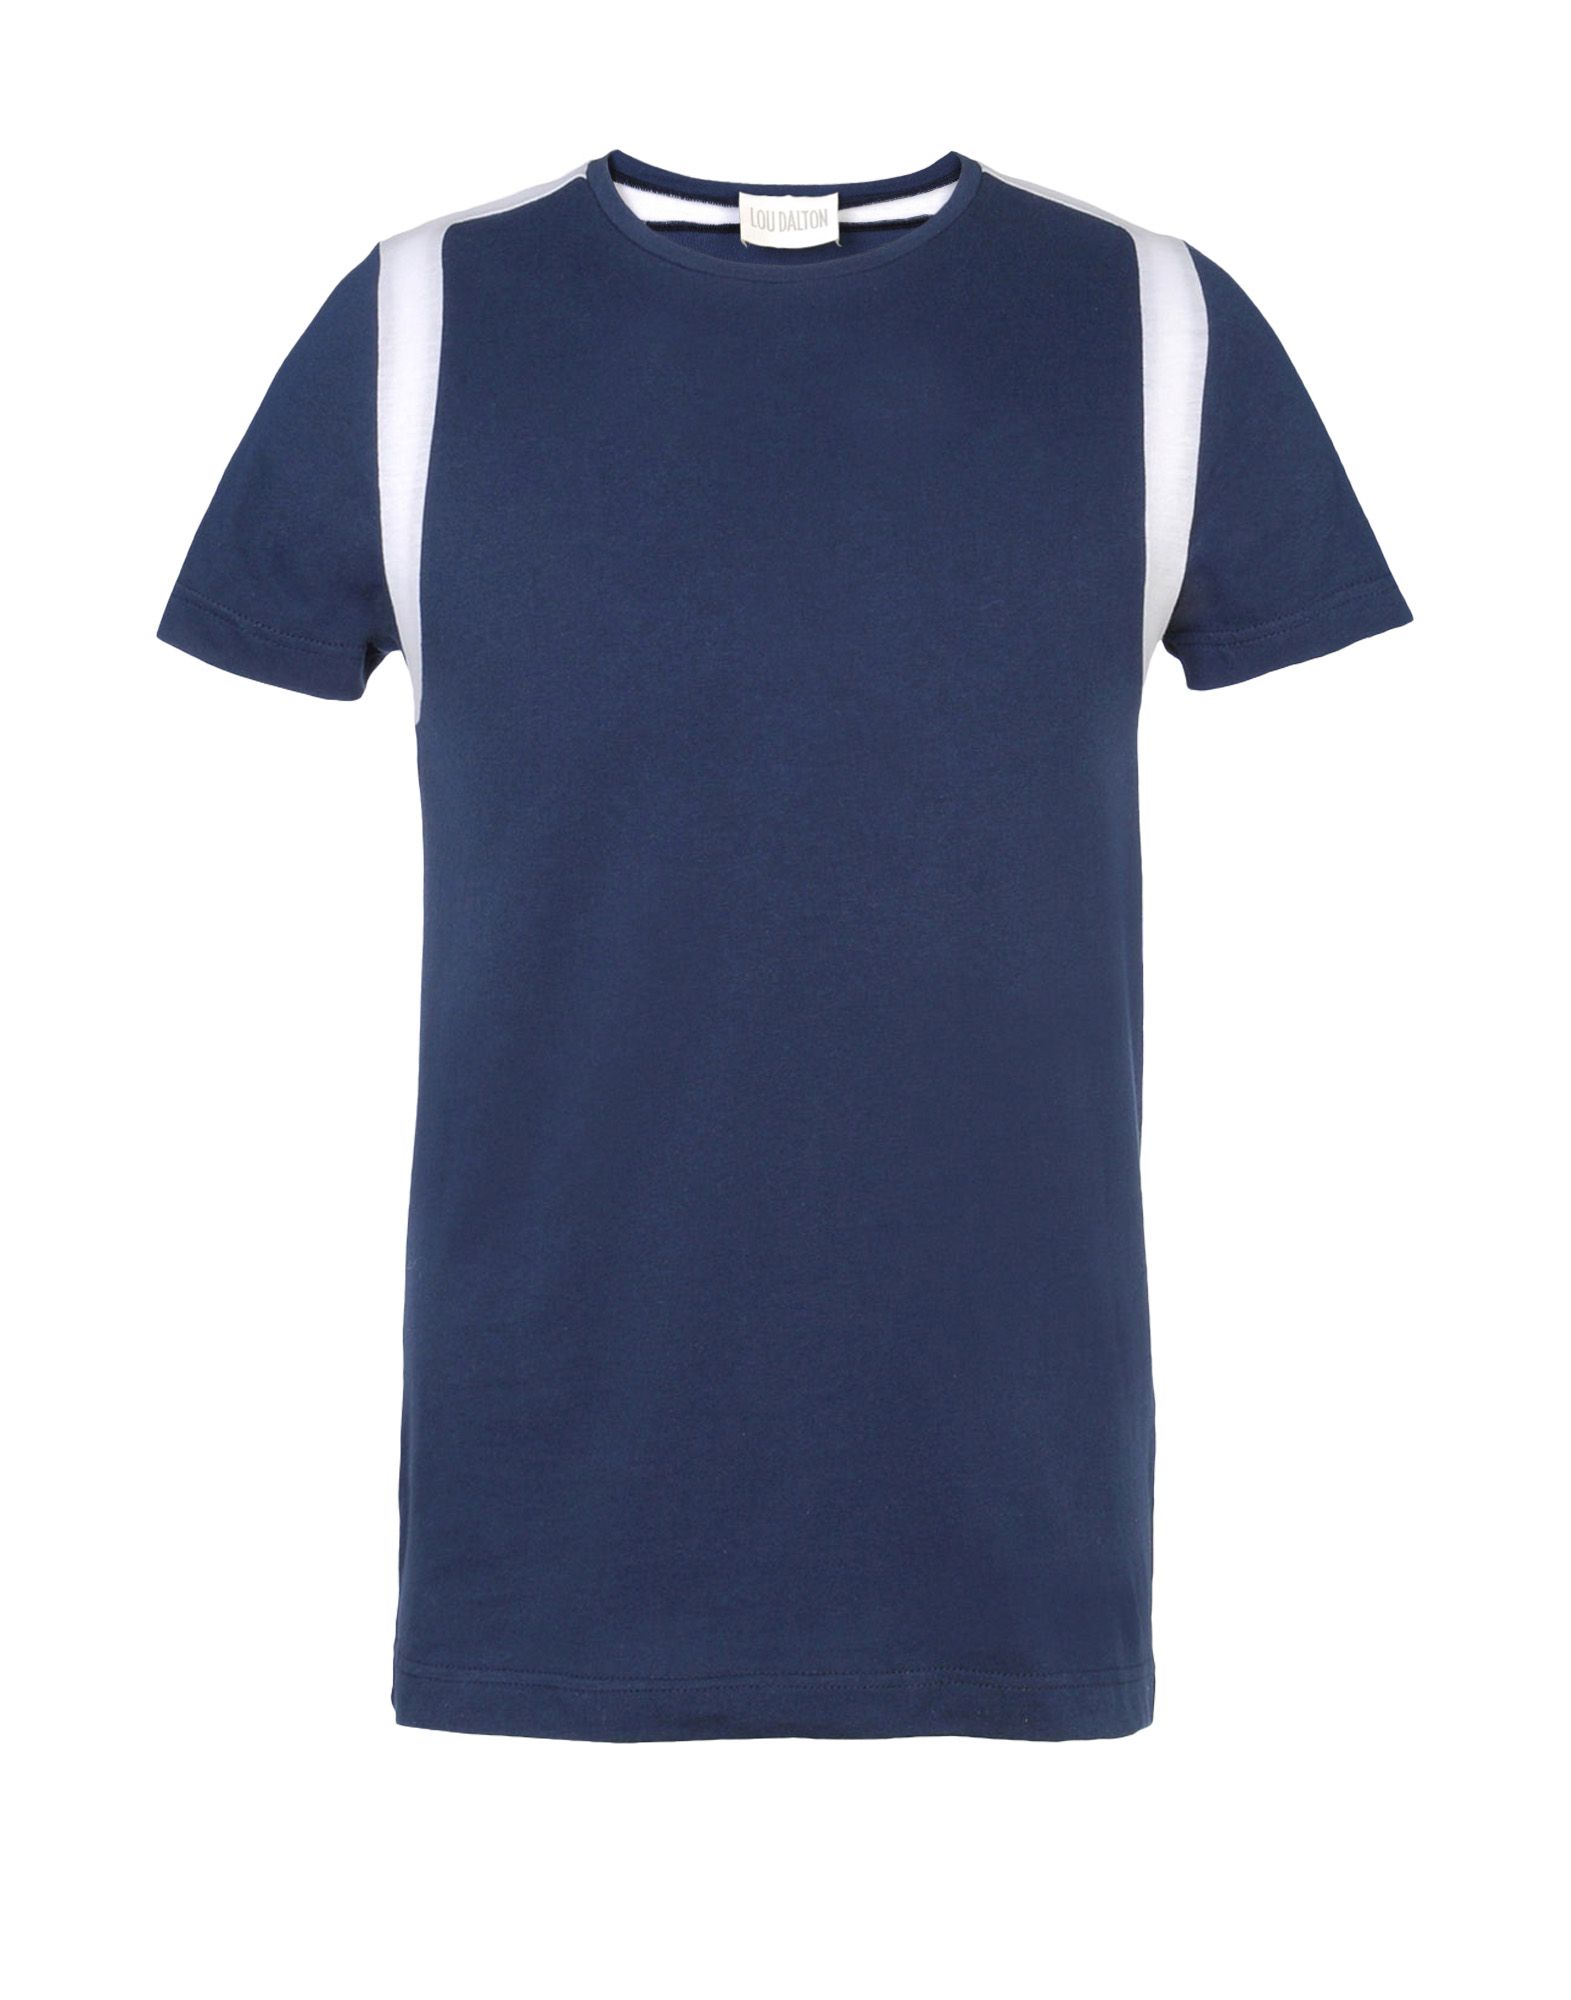 《送料無料》LOU DALTON メンズ T シャツ ブルー L コットン 100%